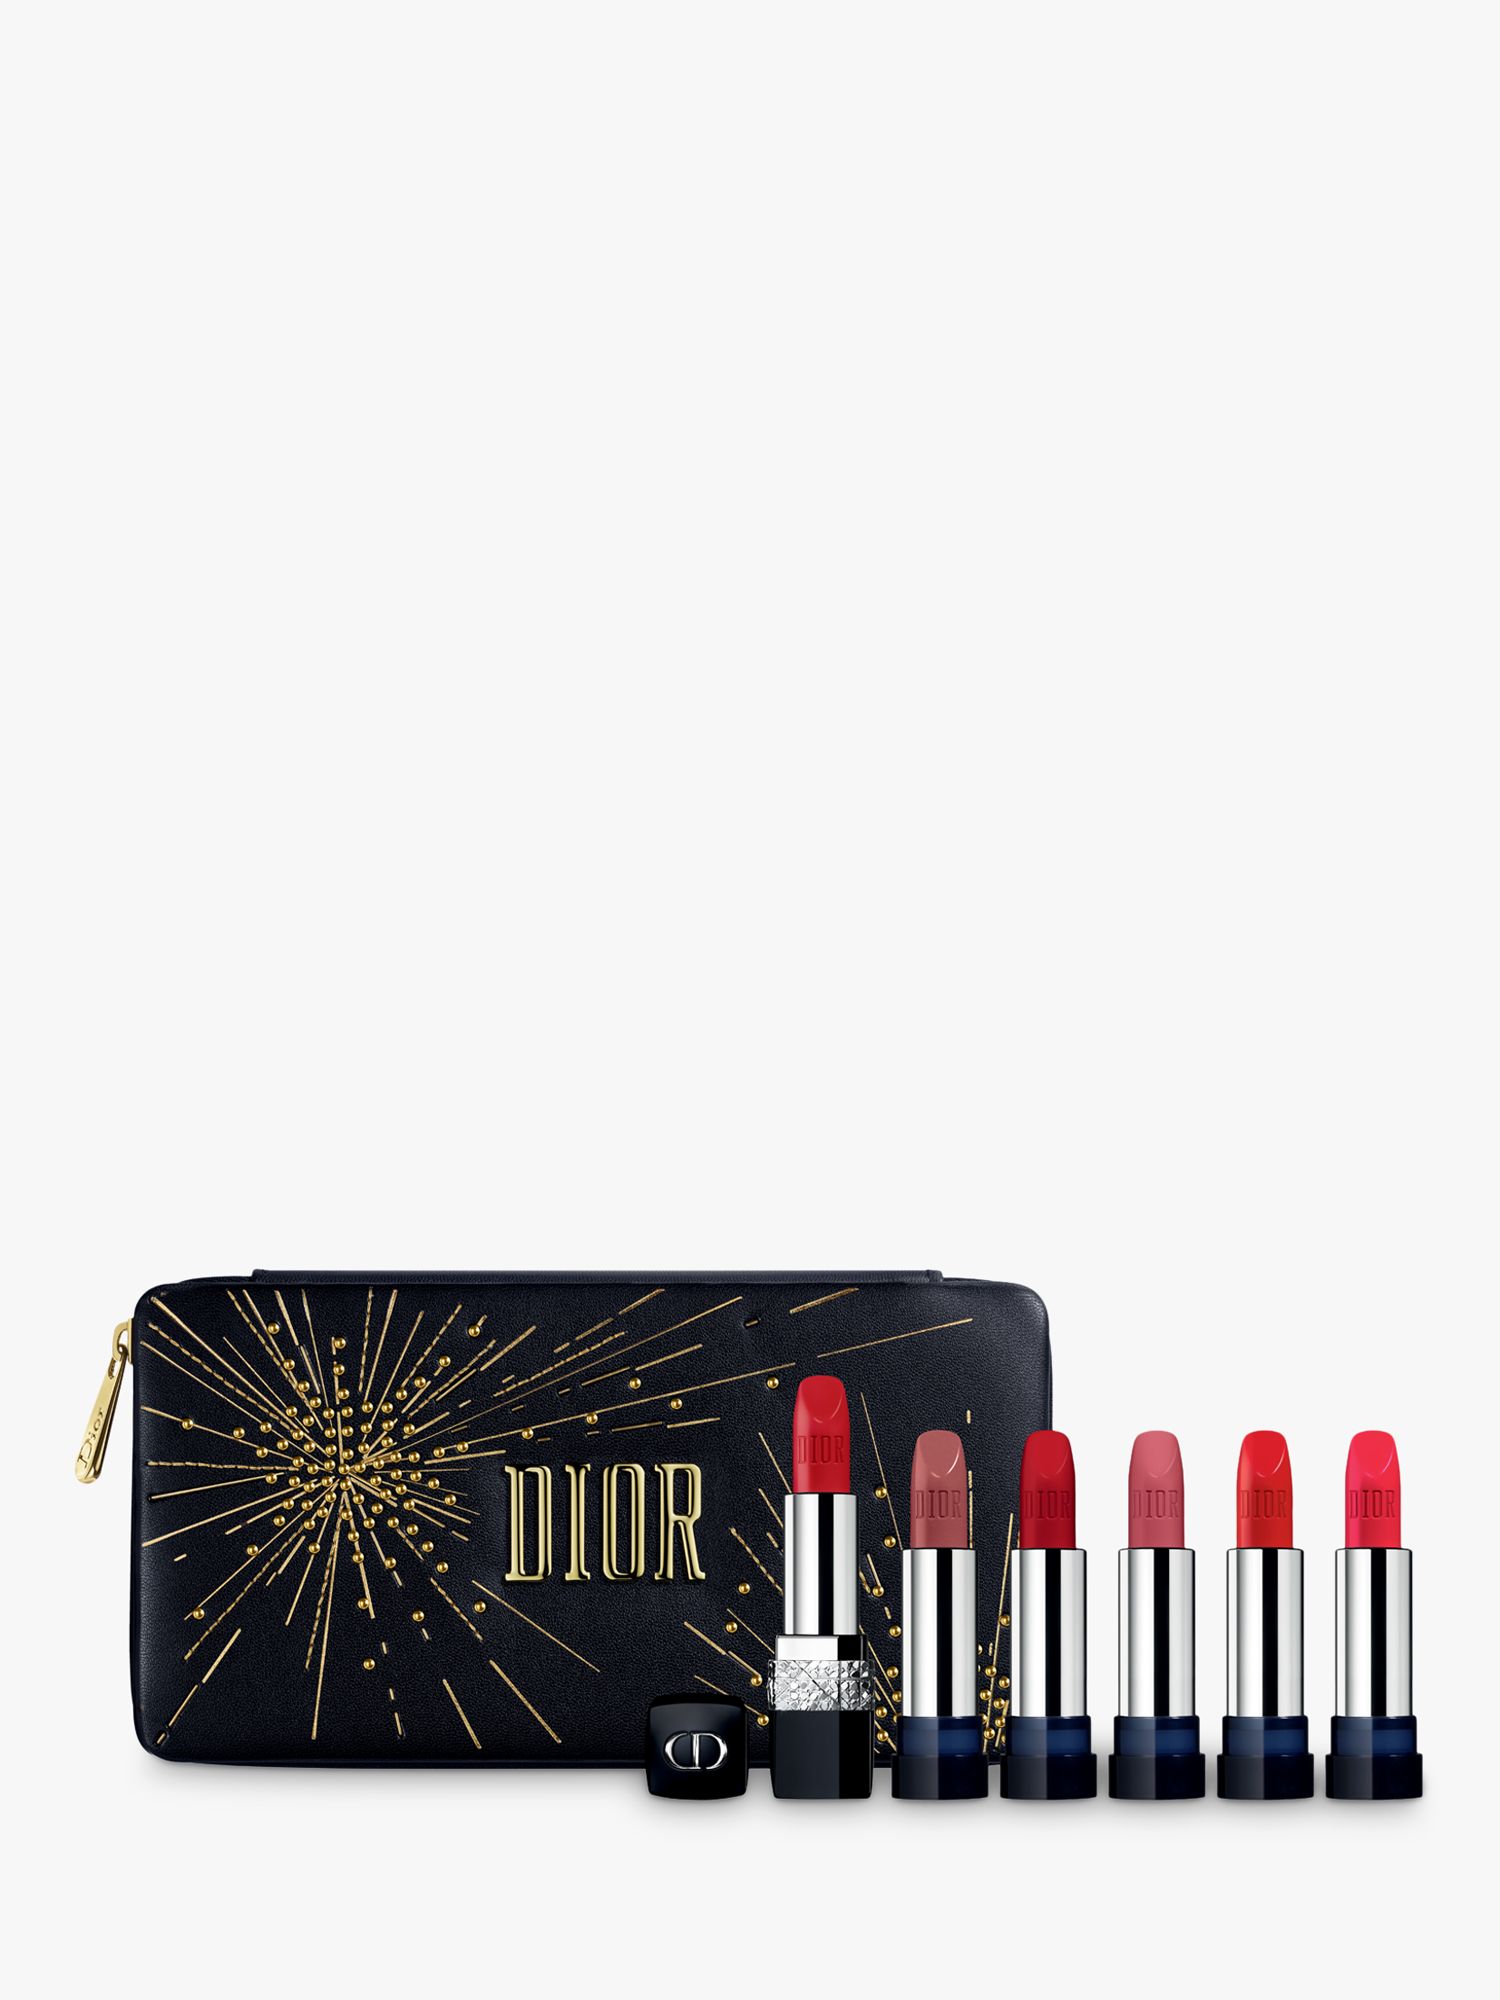 dior lipstick set